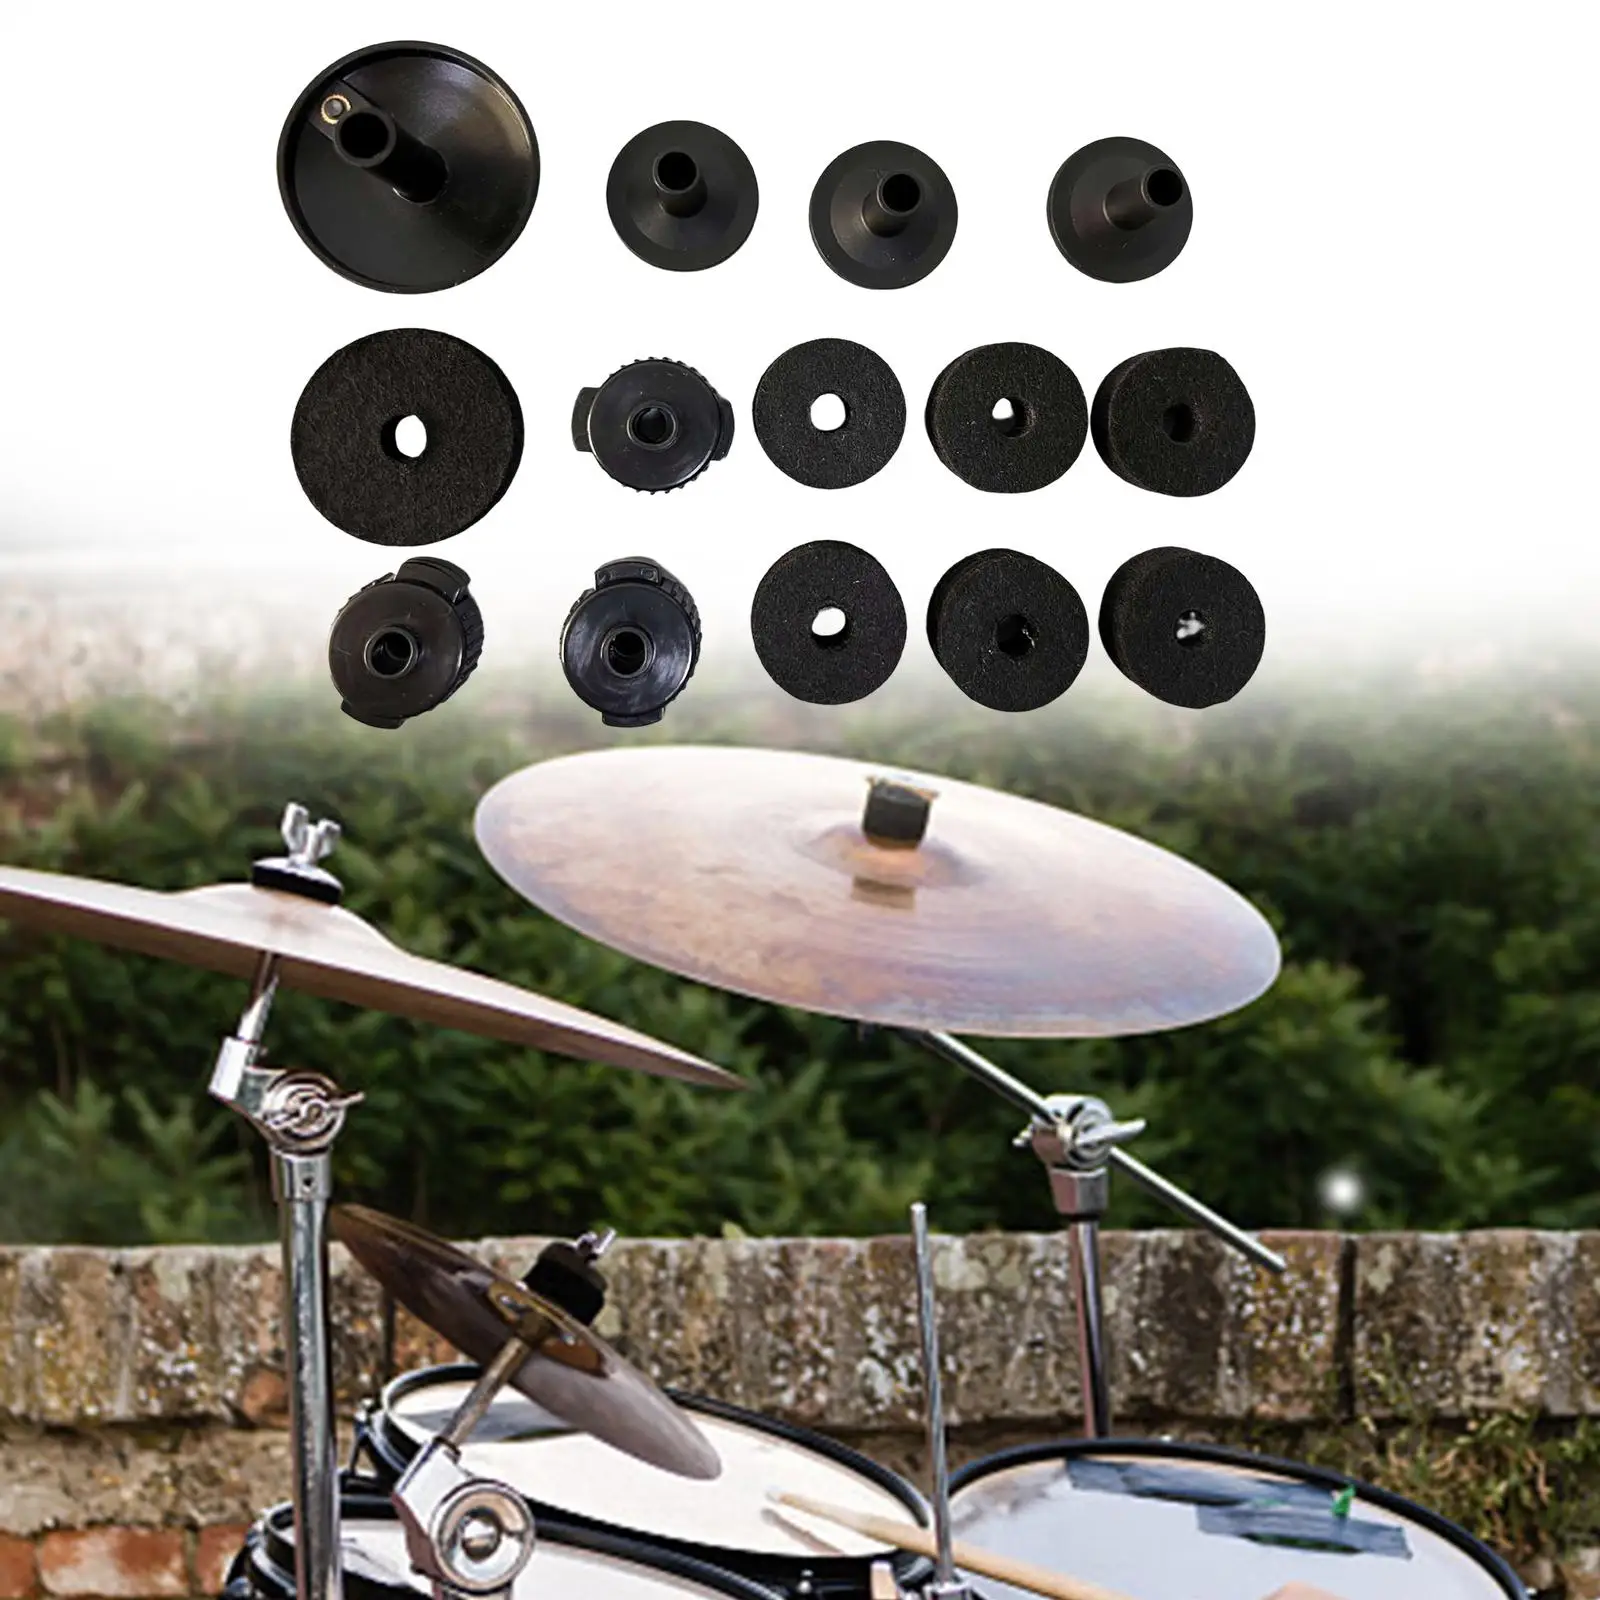 14Pcs Drum Cymbal Felt Pads Drum Kit Accessories Set for Drum Accessories Set Drums Replacement Felt